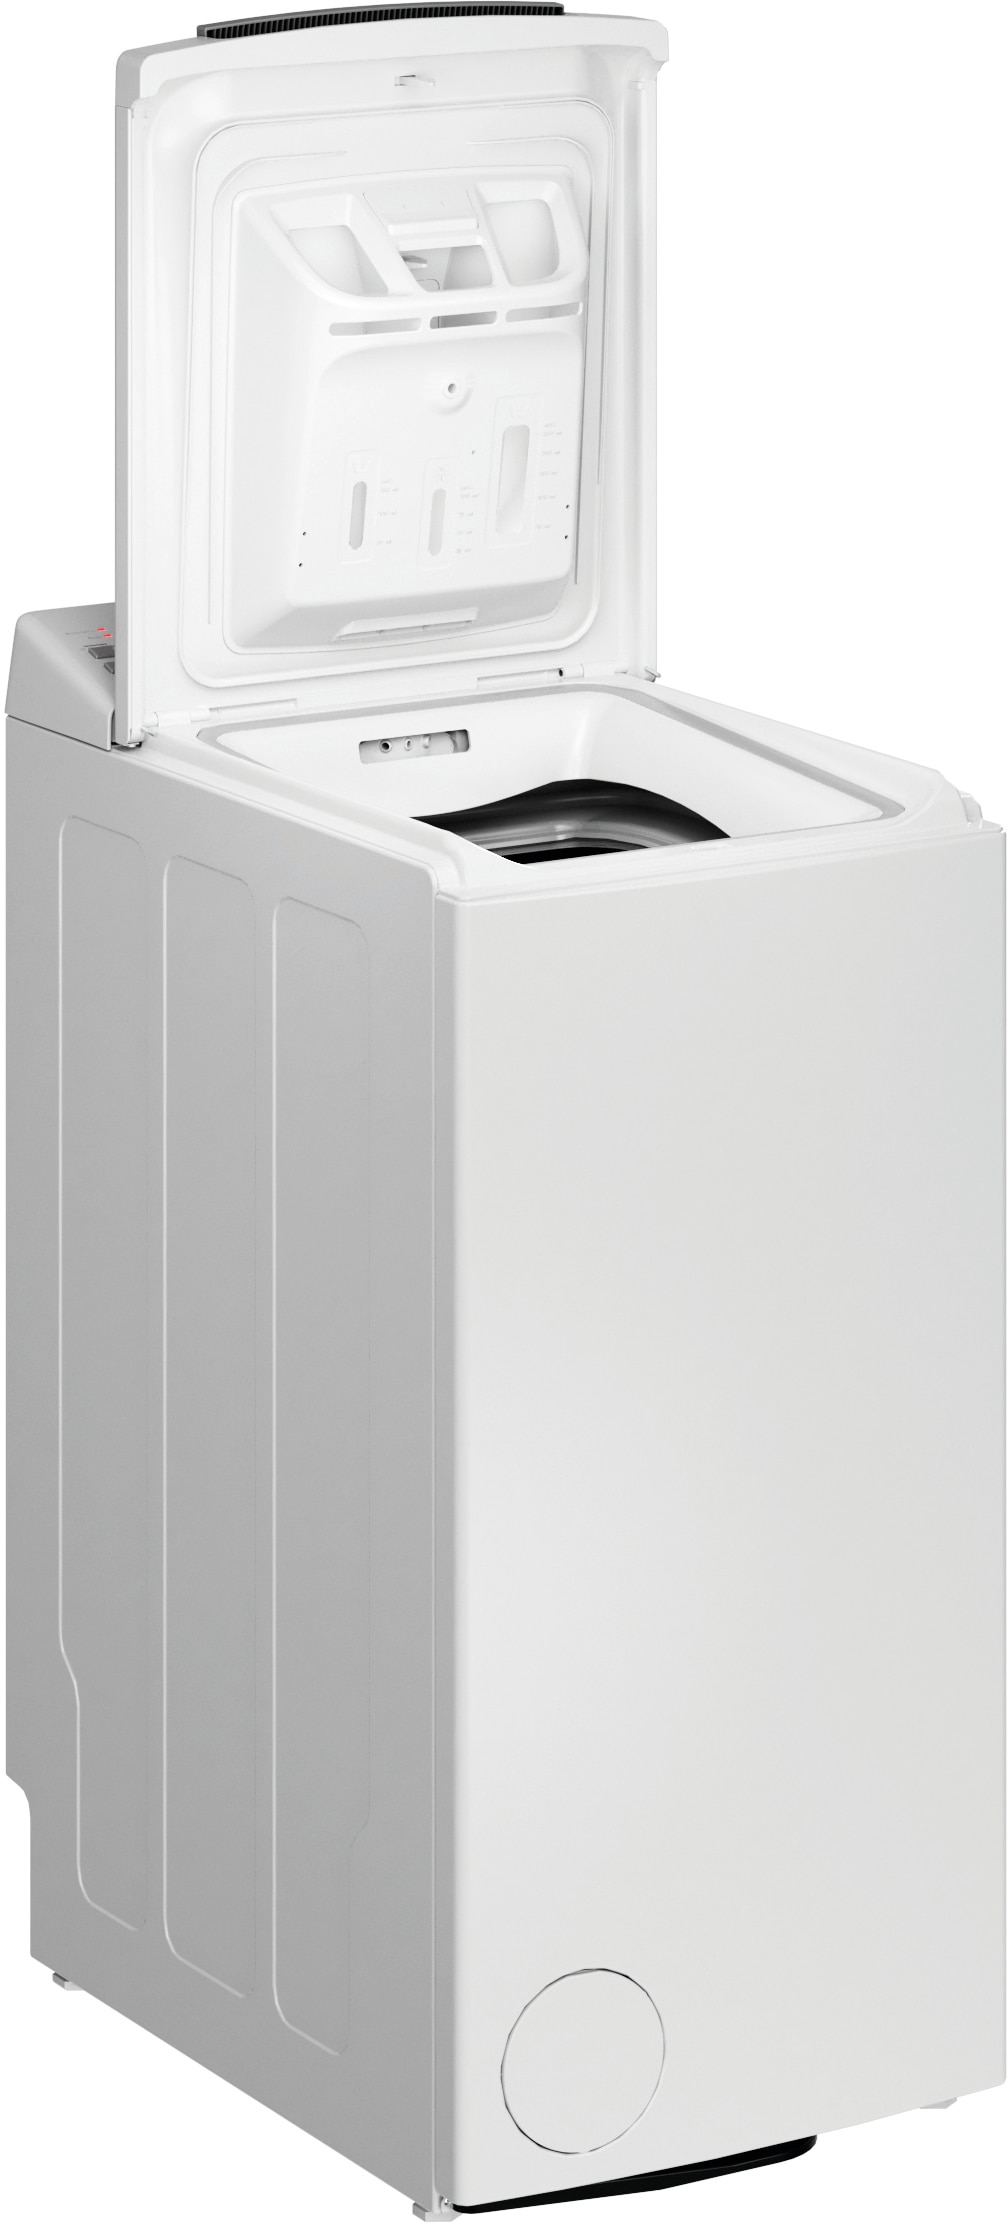 Eco BAUKNECHT Shield 6,5 im 1200 C«, Waschmaschine 6523 WMT Eco »WMT bestellen 6523 Online-Shop C, U/min Toplader kg, Shield